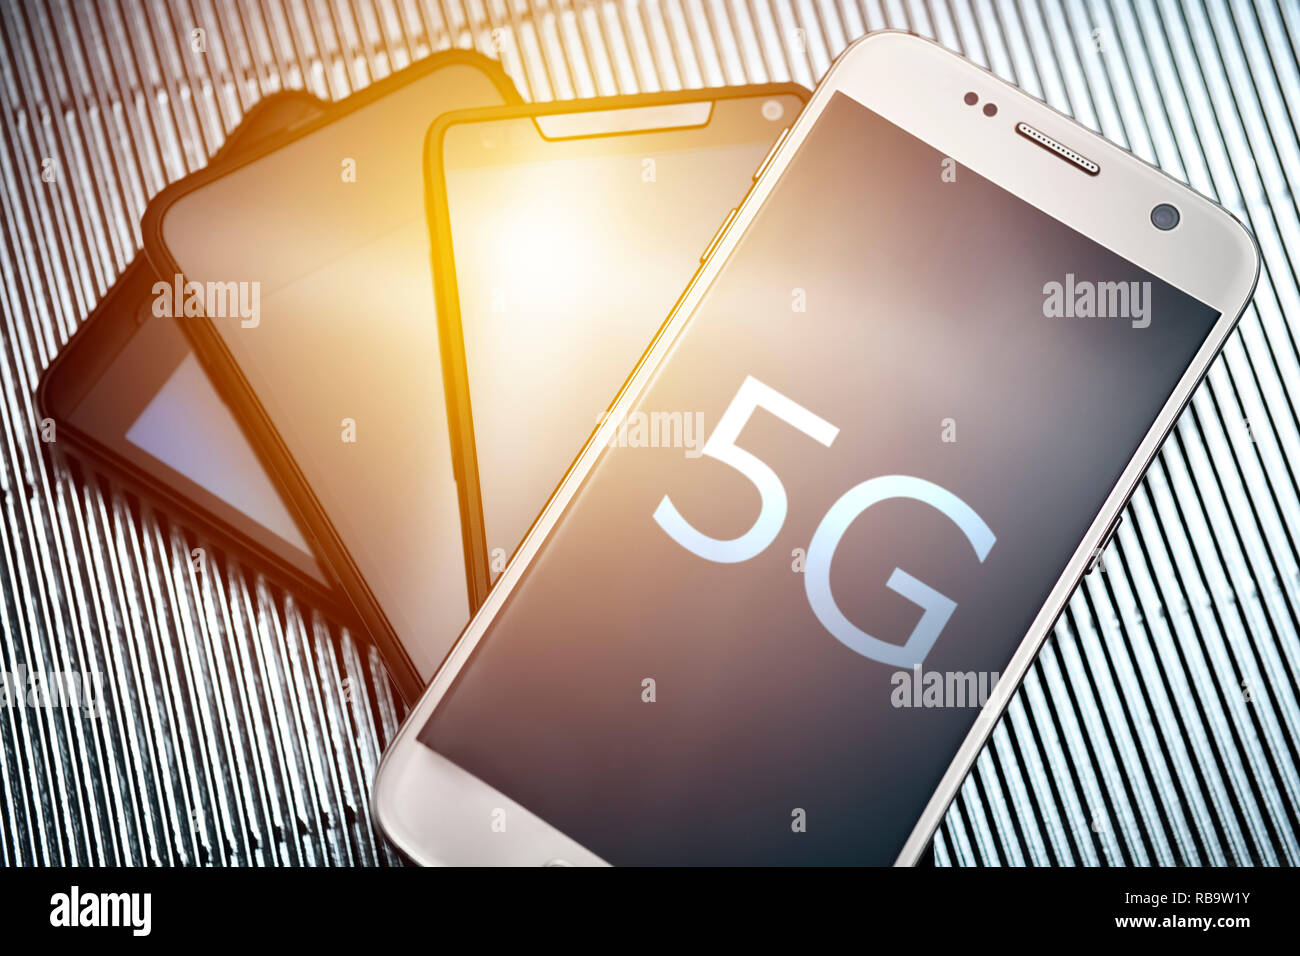 Les Smartphones, 5G mobile standards de communication Banque D'Images